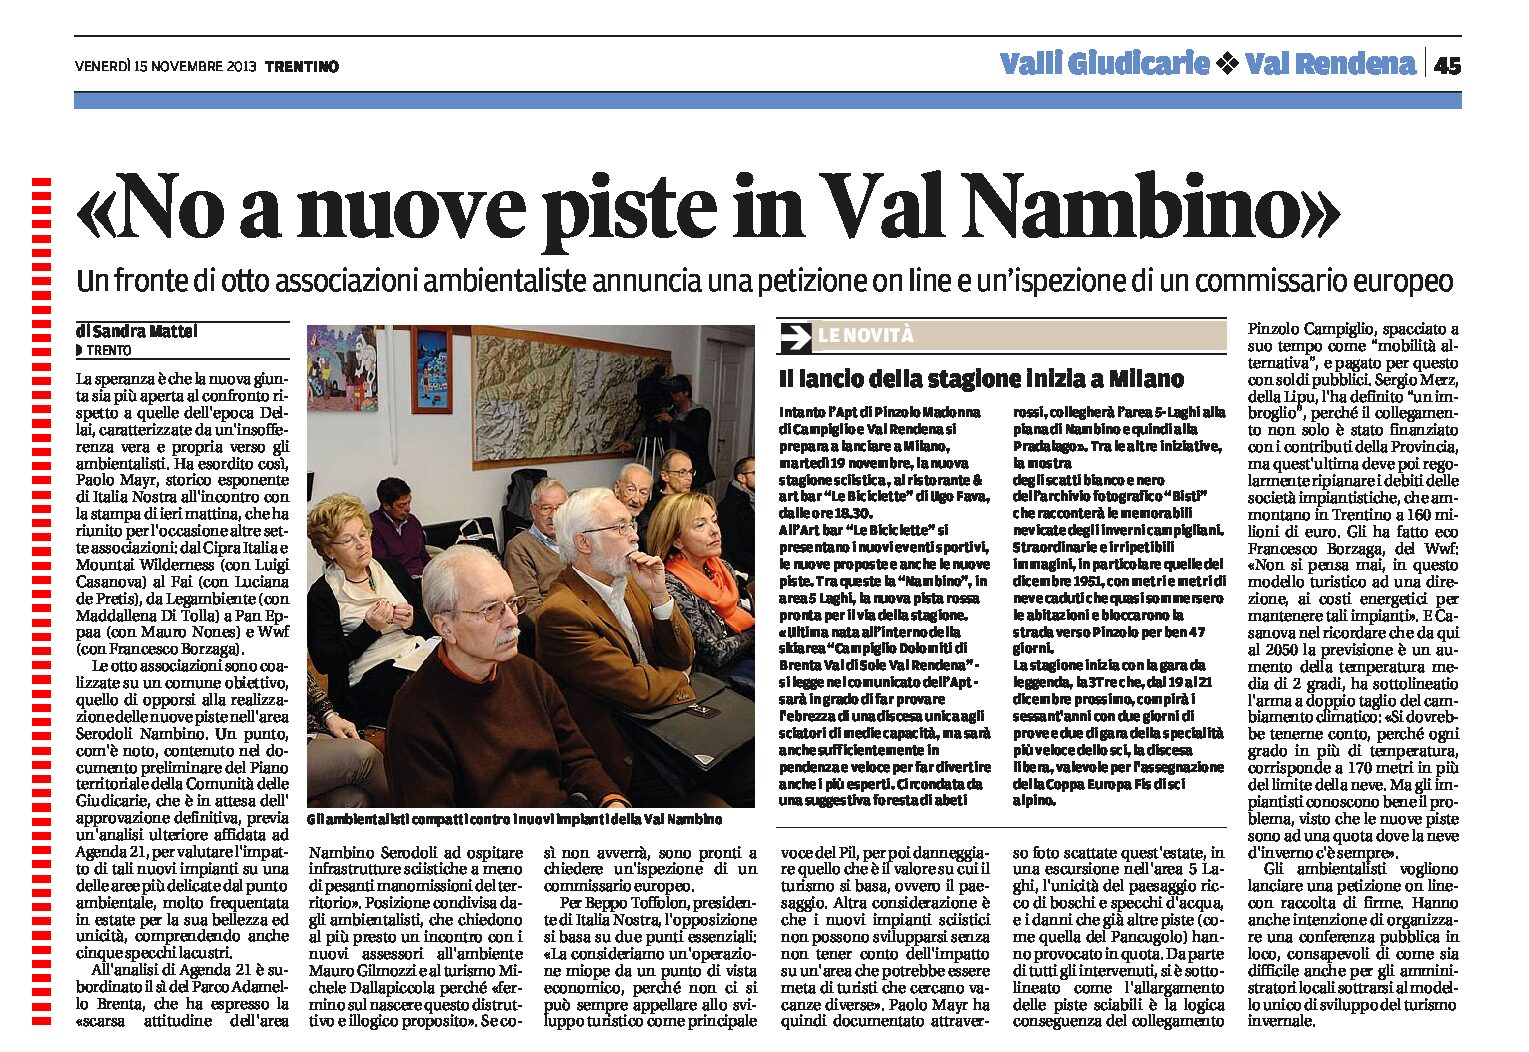 Otto associazioni ambientaliste contro nuove piste in Val Nambino.